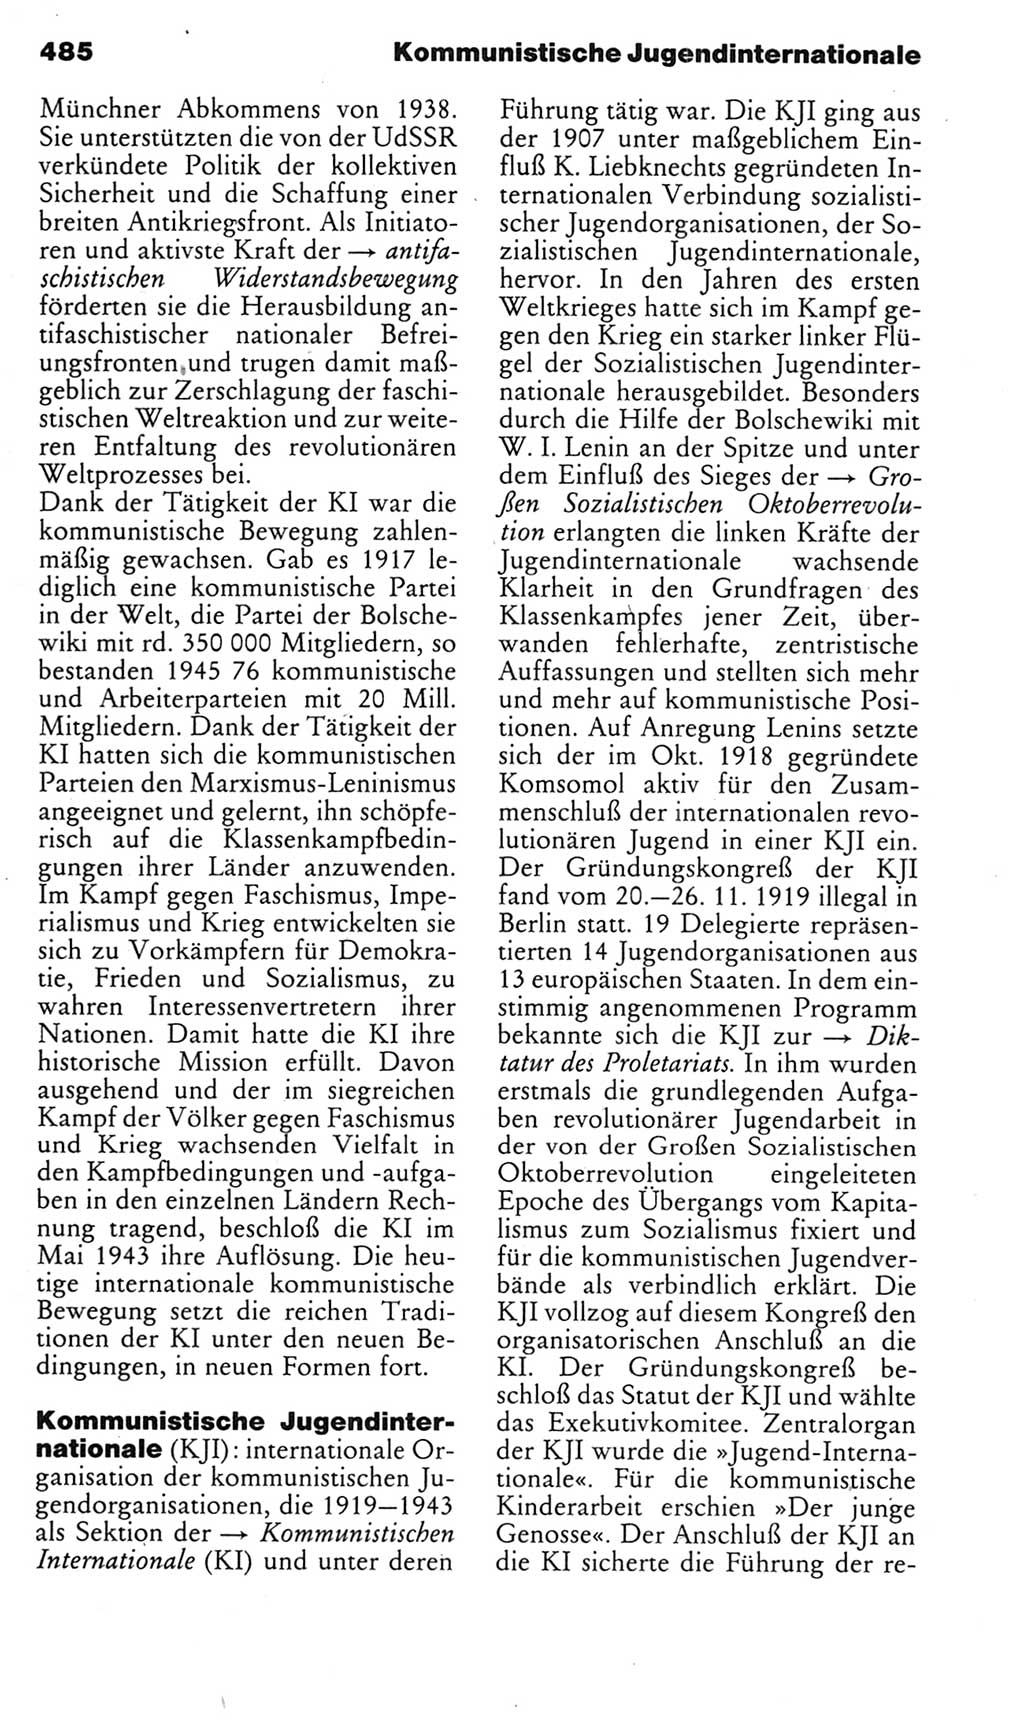 Kleines politisches Wörterbuch [Deutsche Demokratische Republik (DDR)] 1985, Seite 485 (Kl. pol. Wb. DDR 1985, S. 485)